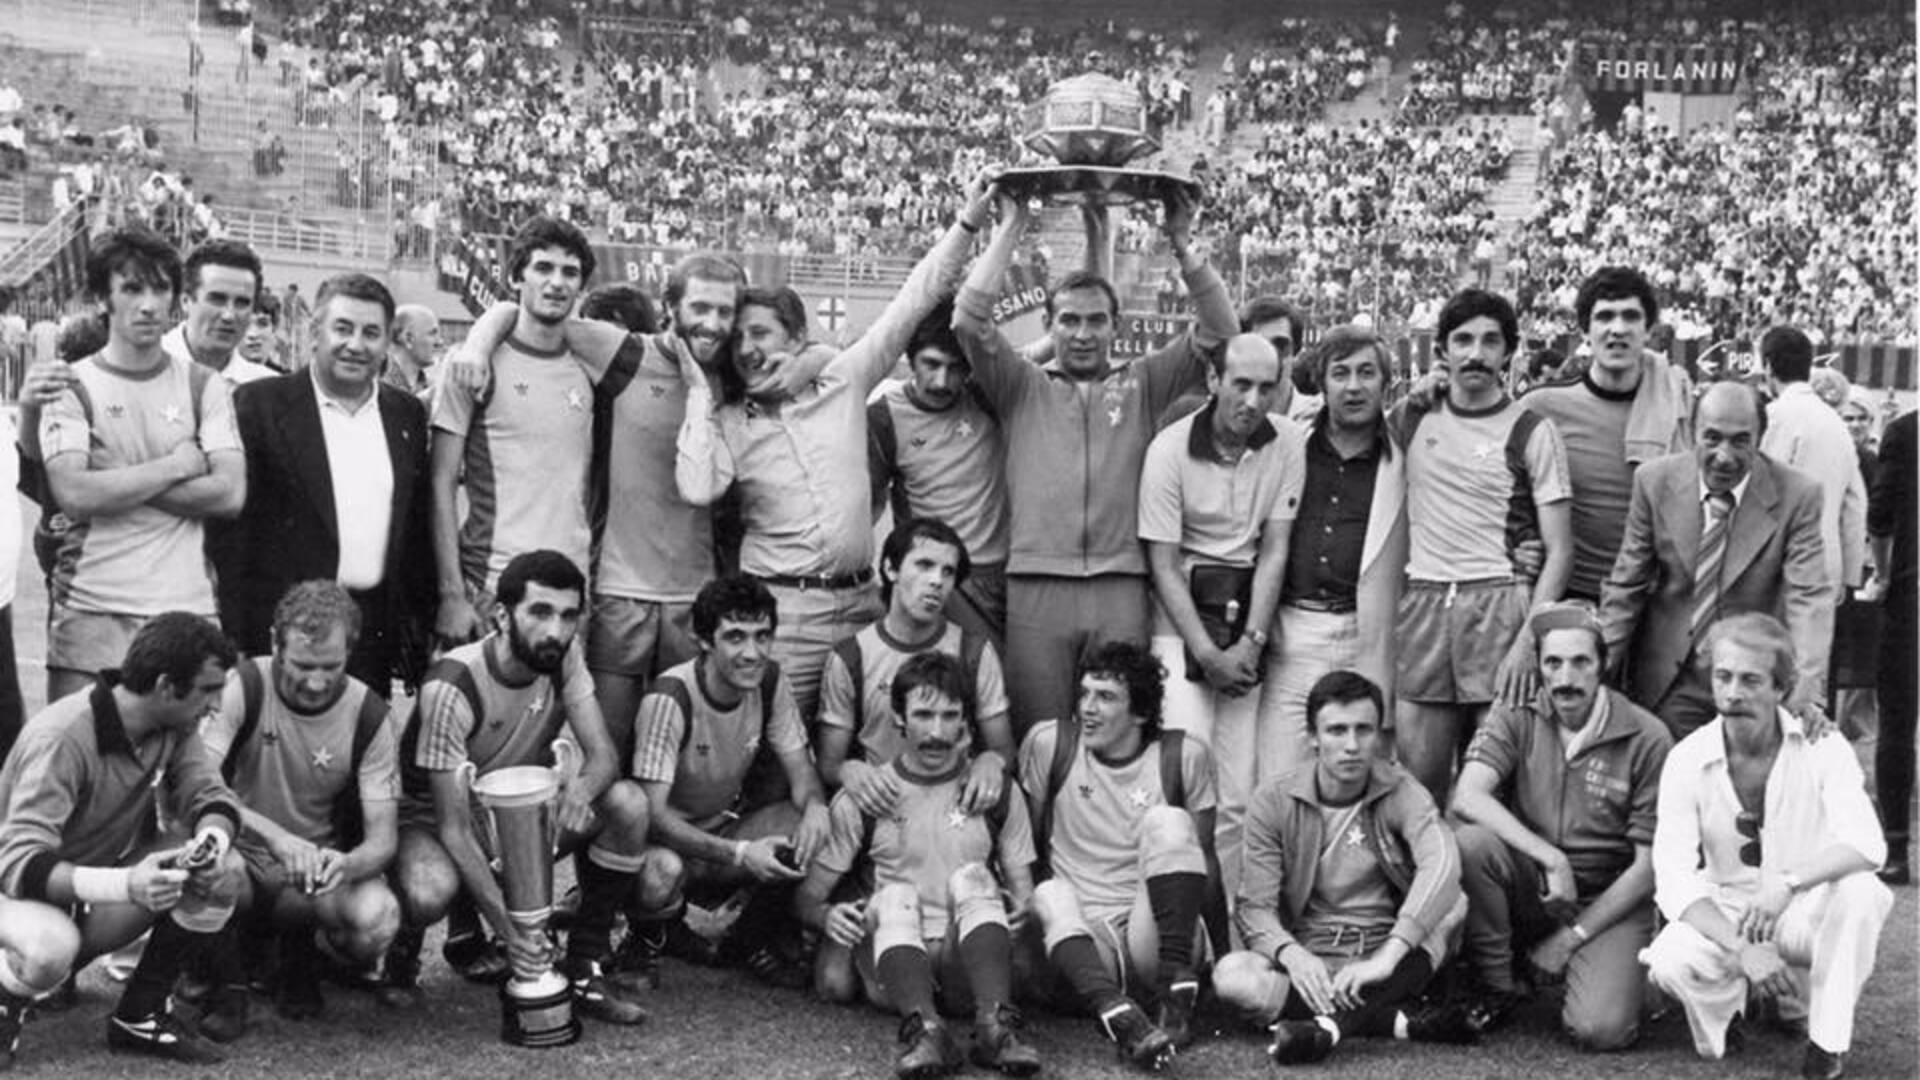 La storia gloriosa del Casteggio: la vittoria epica nella Coppa Italia Dilettanti del 1976-77